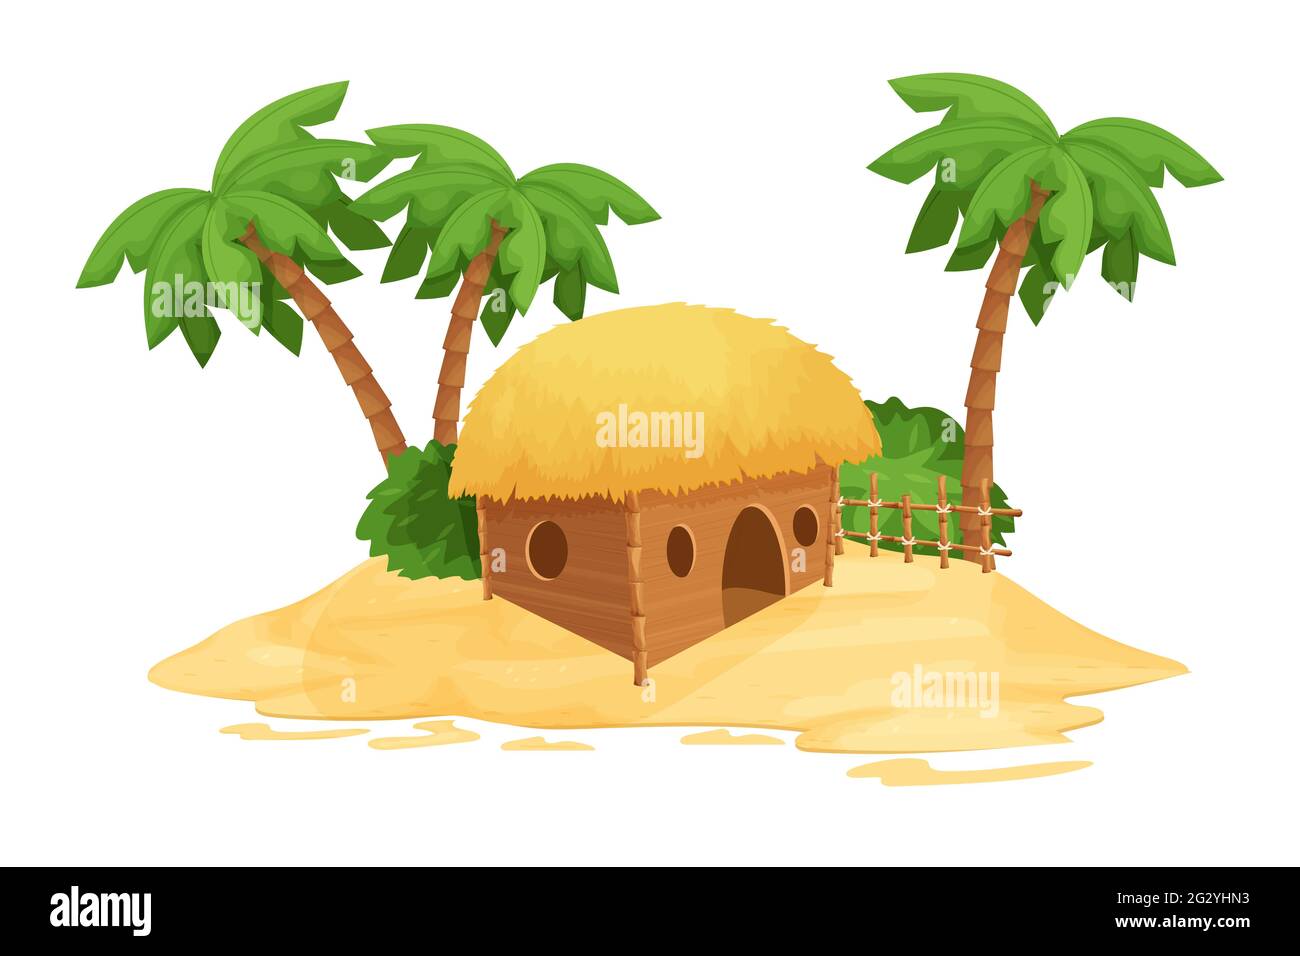 Strandbungalow, Tiki-Hütte mit Strohdach, Bambus- und Holzdetails auf Sand im Cartoon-Stil isoliert auf weißem Hintergrund. Fantasy Gebäude, Urlaub Stock Vektor